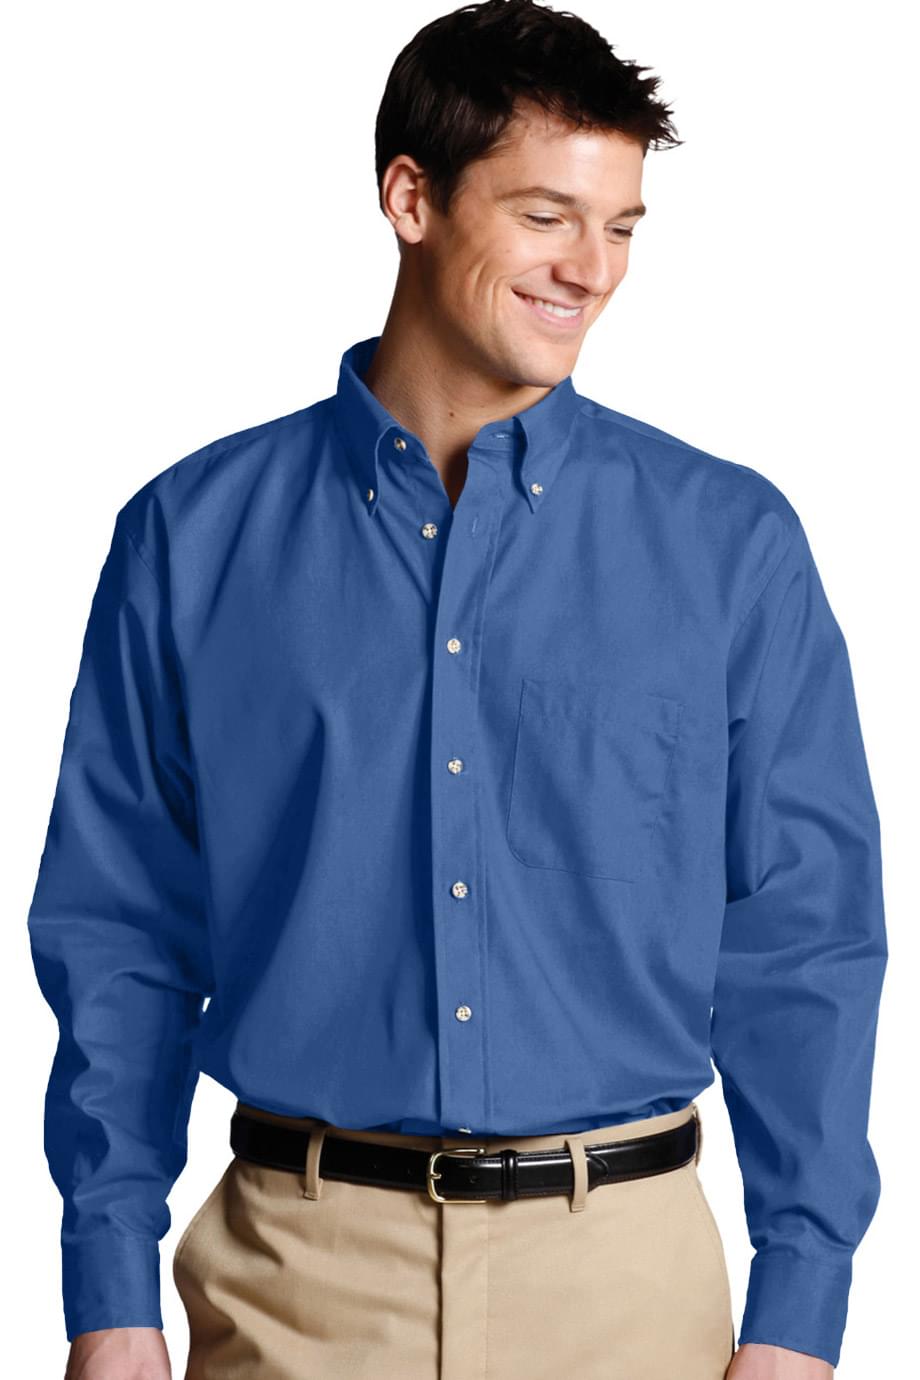 NetJets - Men's Easy Care Poplin Long Sleeve Shirt